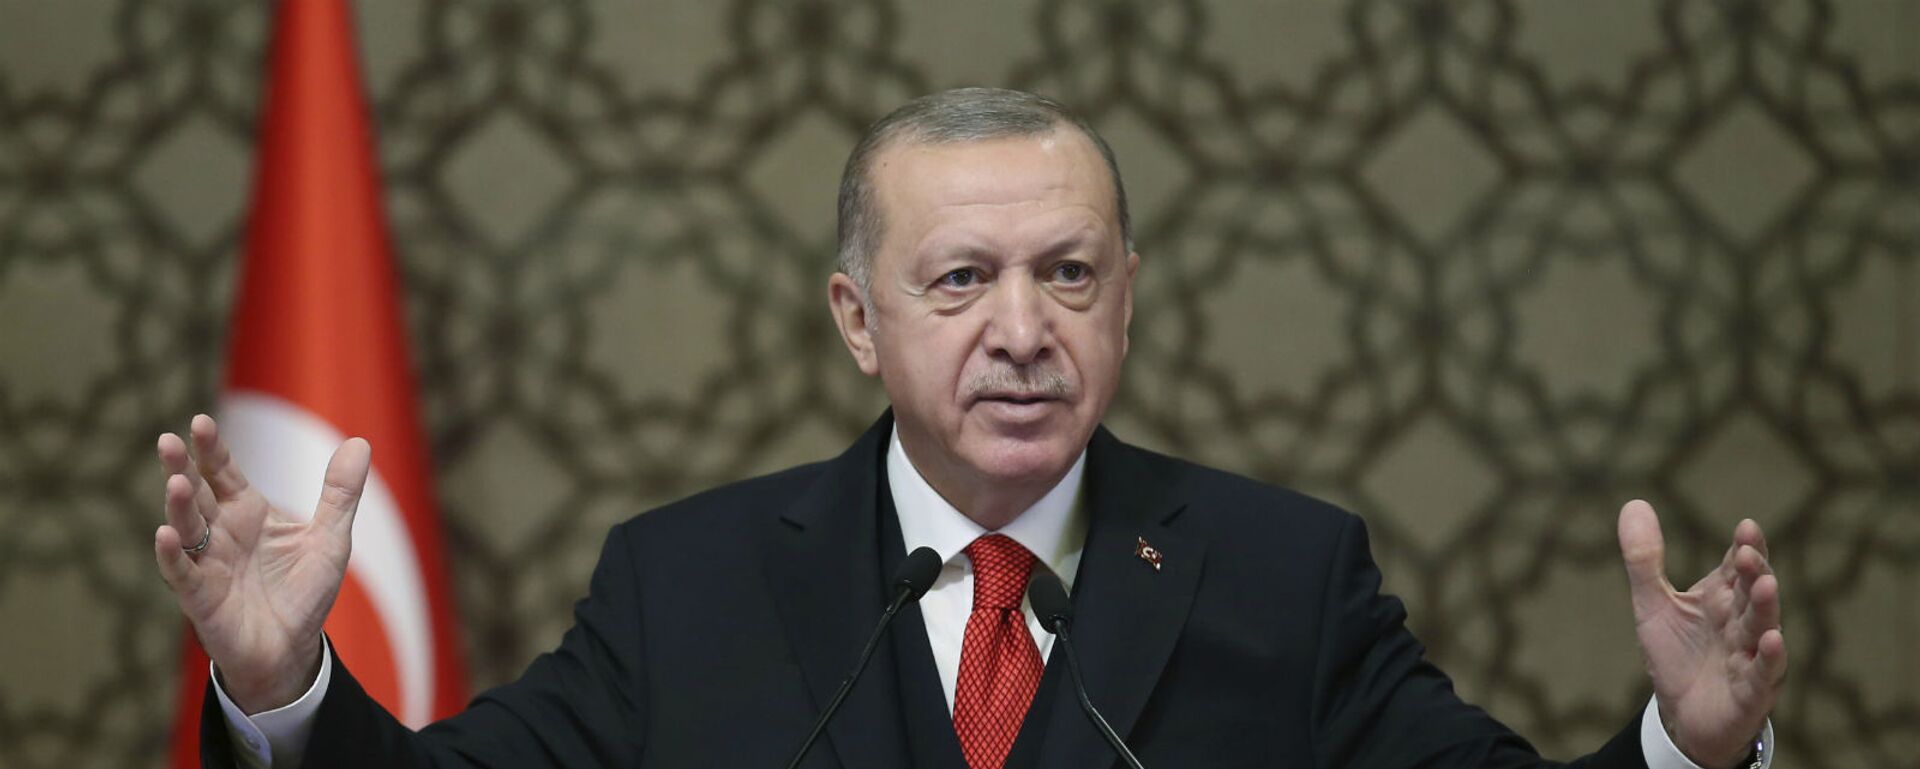 Президент Турции Реджеп Тайип Эрдоган выступает на встрече послов Турции (9 ноября 2020). Анкара - Sputnik Армения, 1920, 16.03.2021